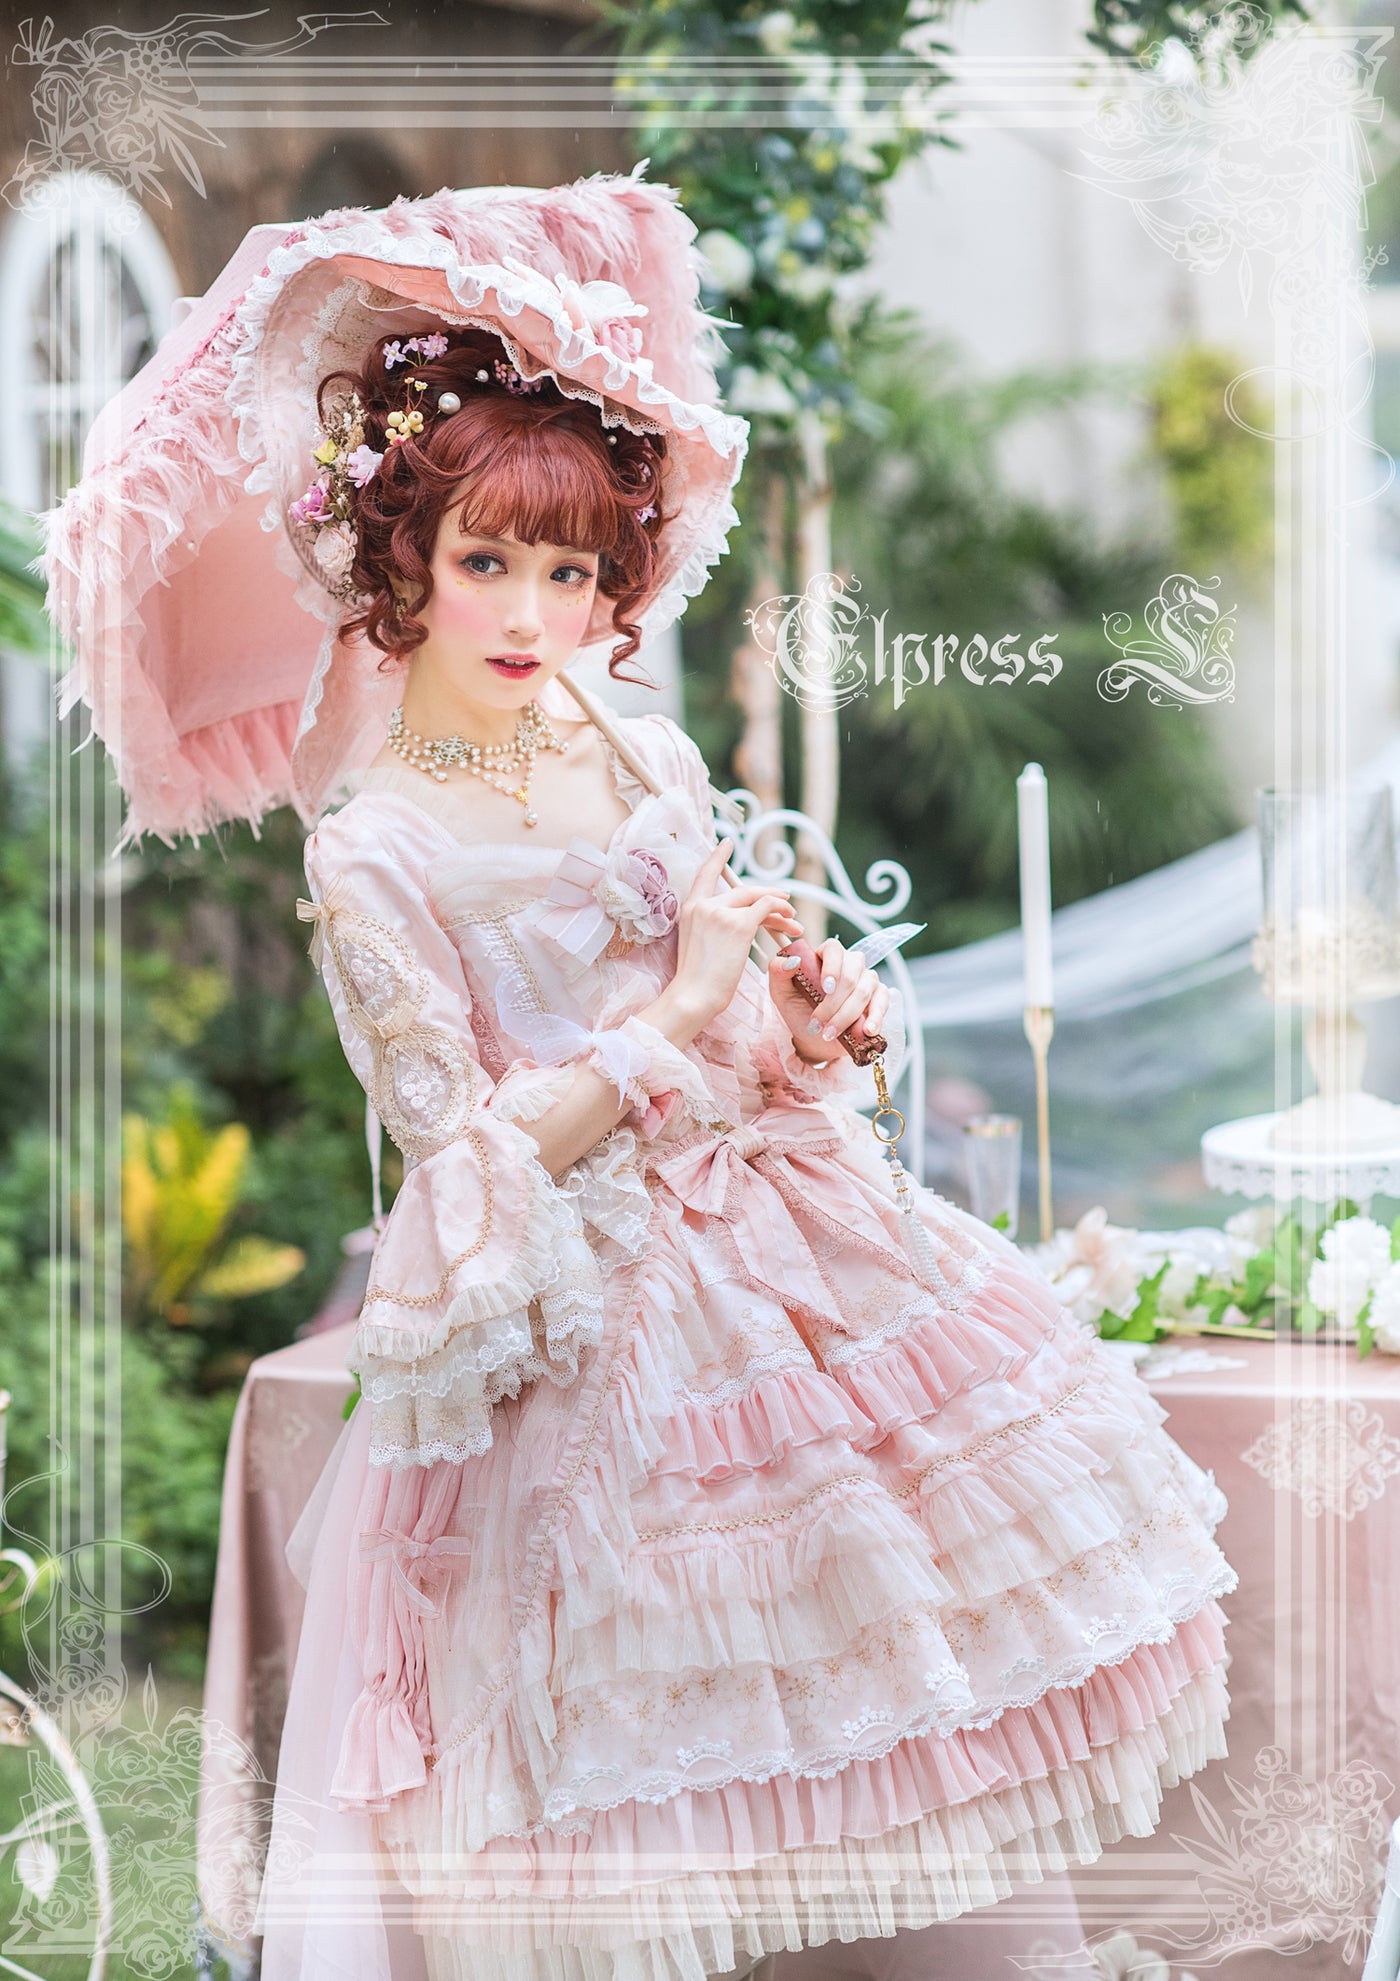 Elpress L~Fairies Island~Lolita wedding Dress OP Dress pink S 